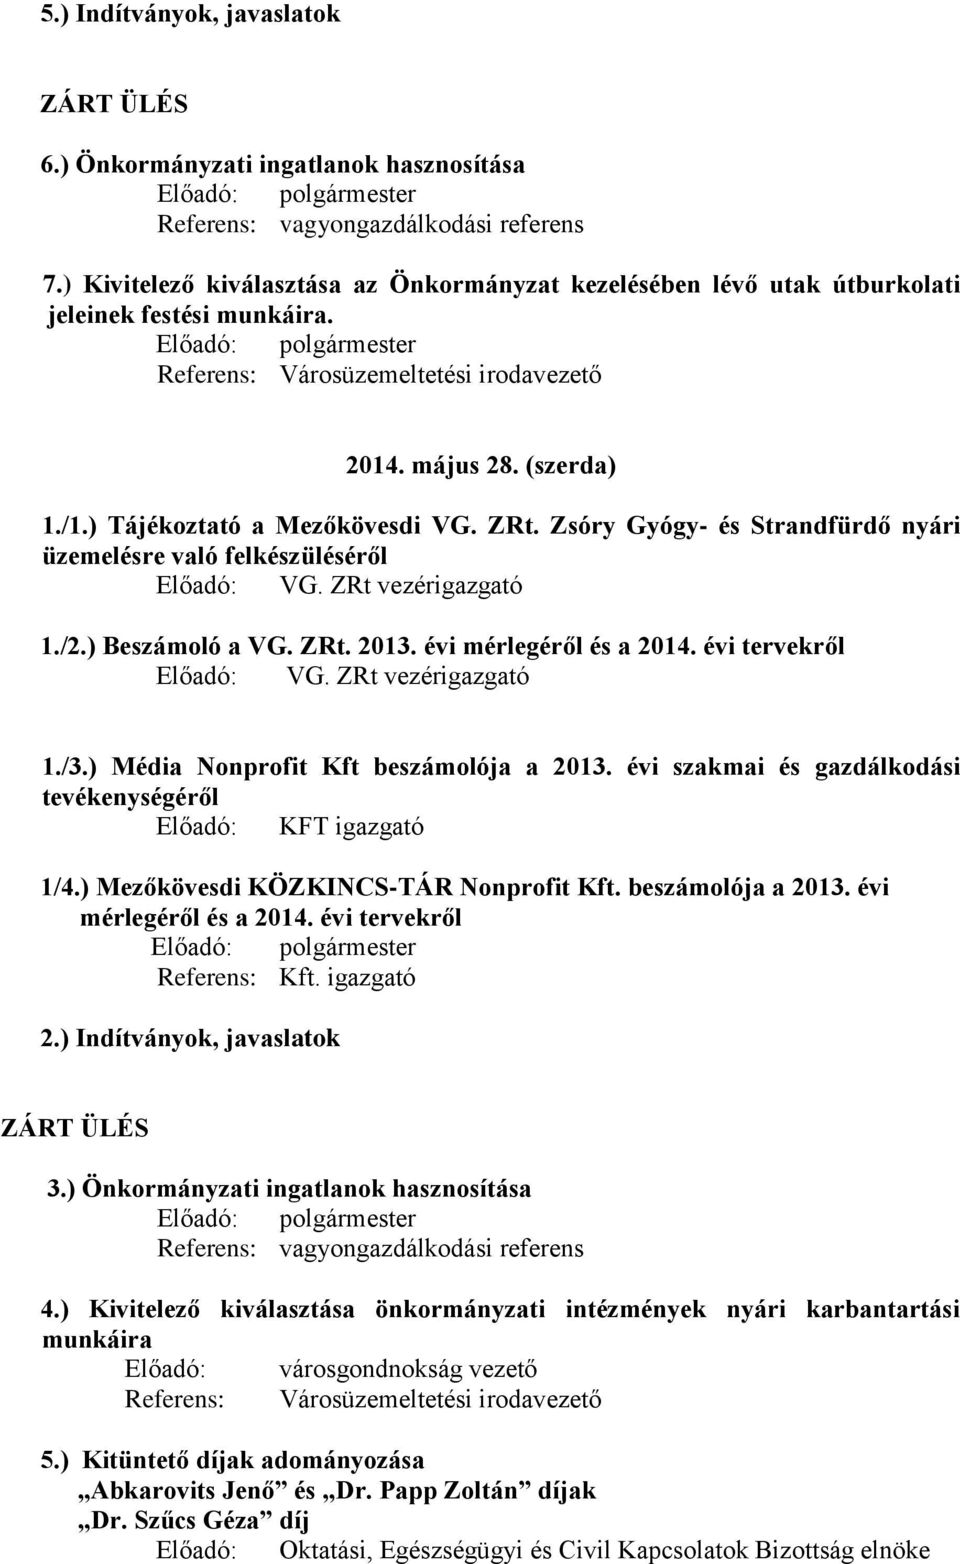 ) Tájékoztató a Mezőkövesdi VG. ZRt. Zsóry Gyógy- és Strandfürdő nyári üzemelésre való felkészüléséről Előadó: VG. ZRt vezérigazgató 1./2.) Beszámoló a VG. ZRt. 2013. évi mérlegéről és a 2014.